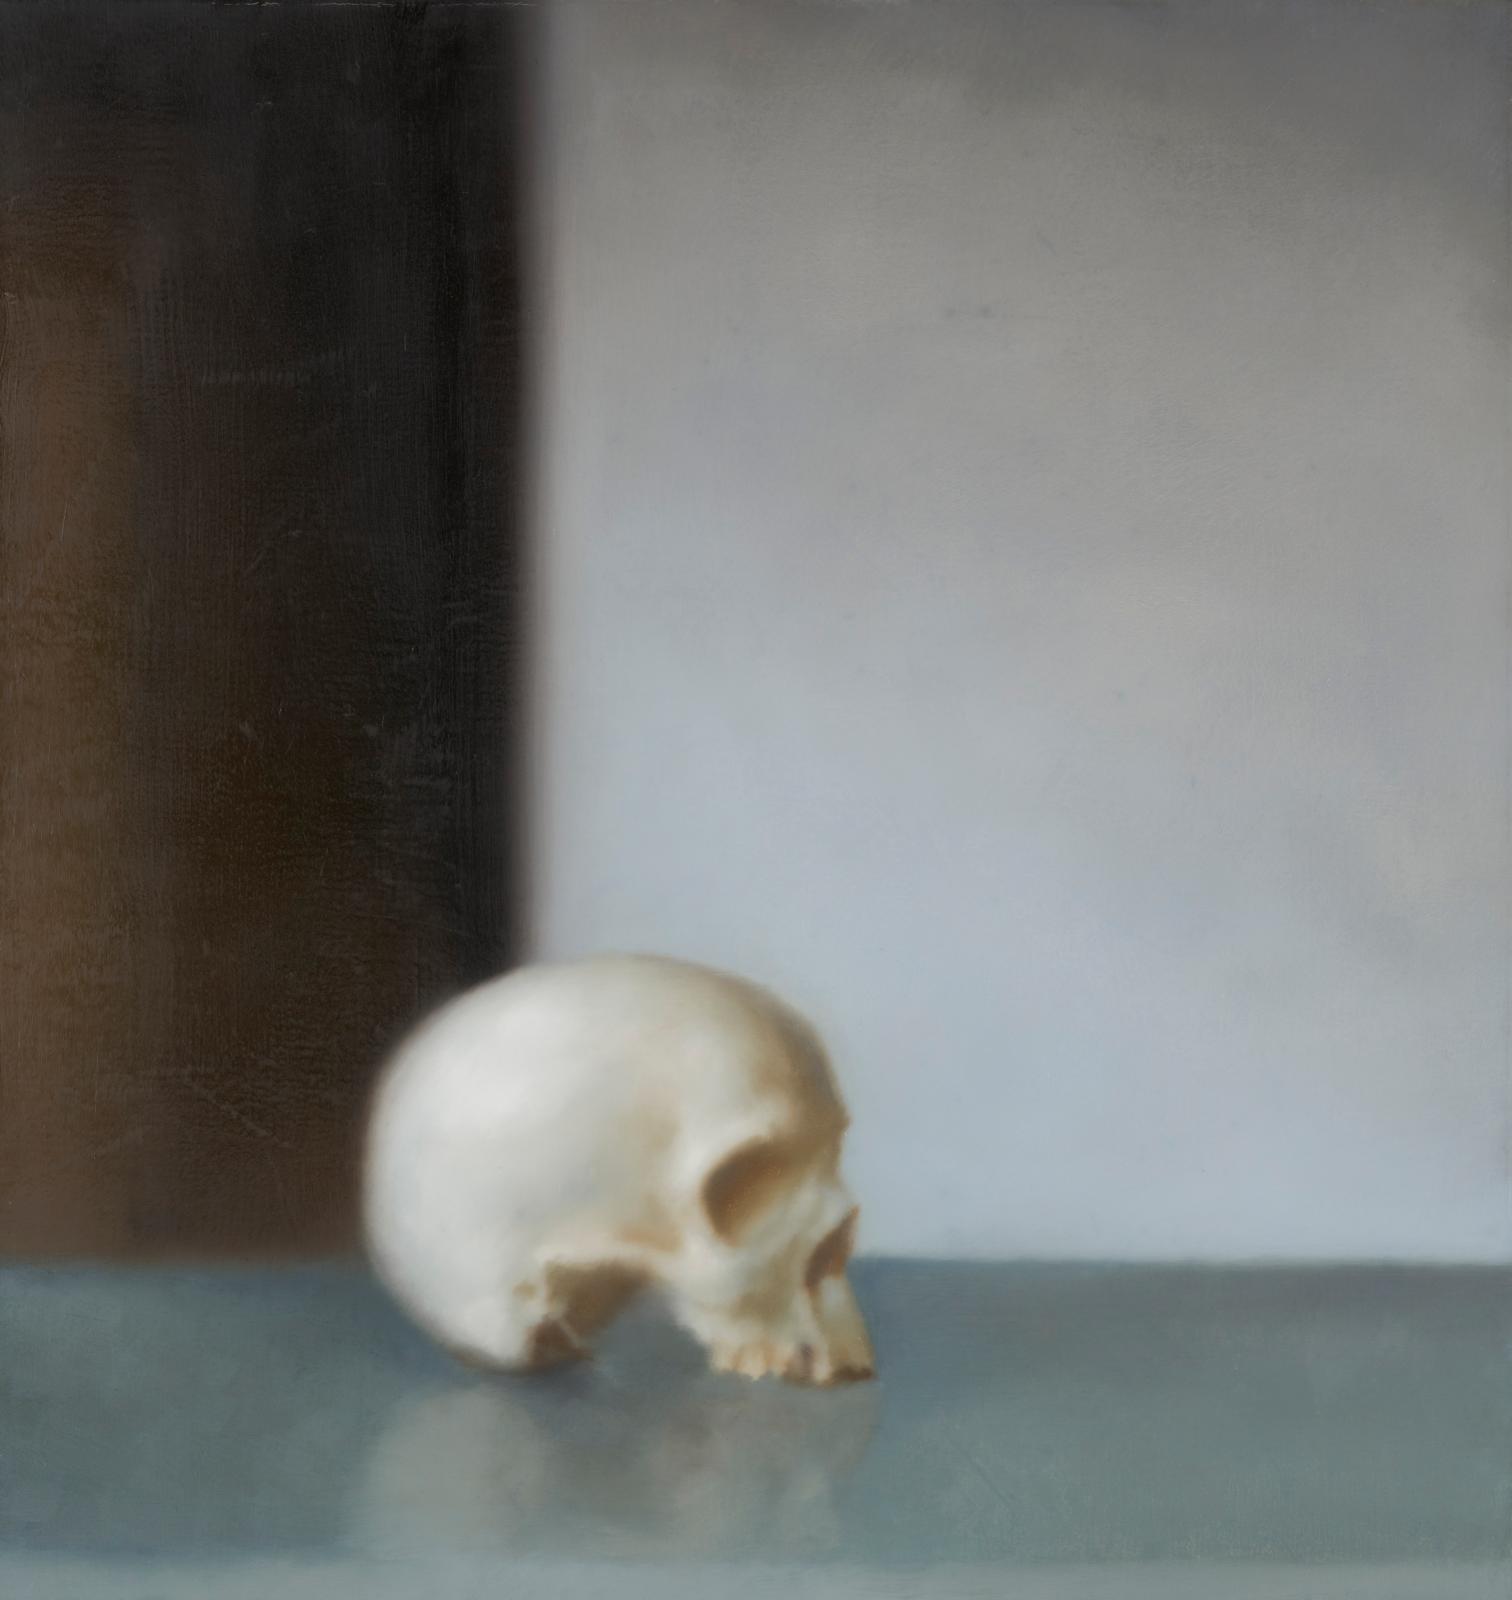 Gerhard Richter, Schädel (Crâne), 1983, huile sur toile, 95 x 90,5 x 3,7 cm (détail), don de l’artiste et de Liliane et Michel Durand-Dess